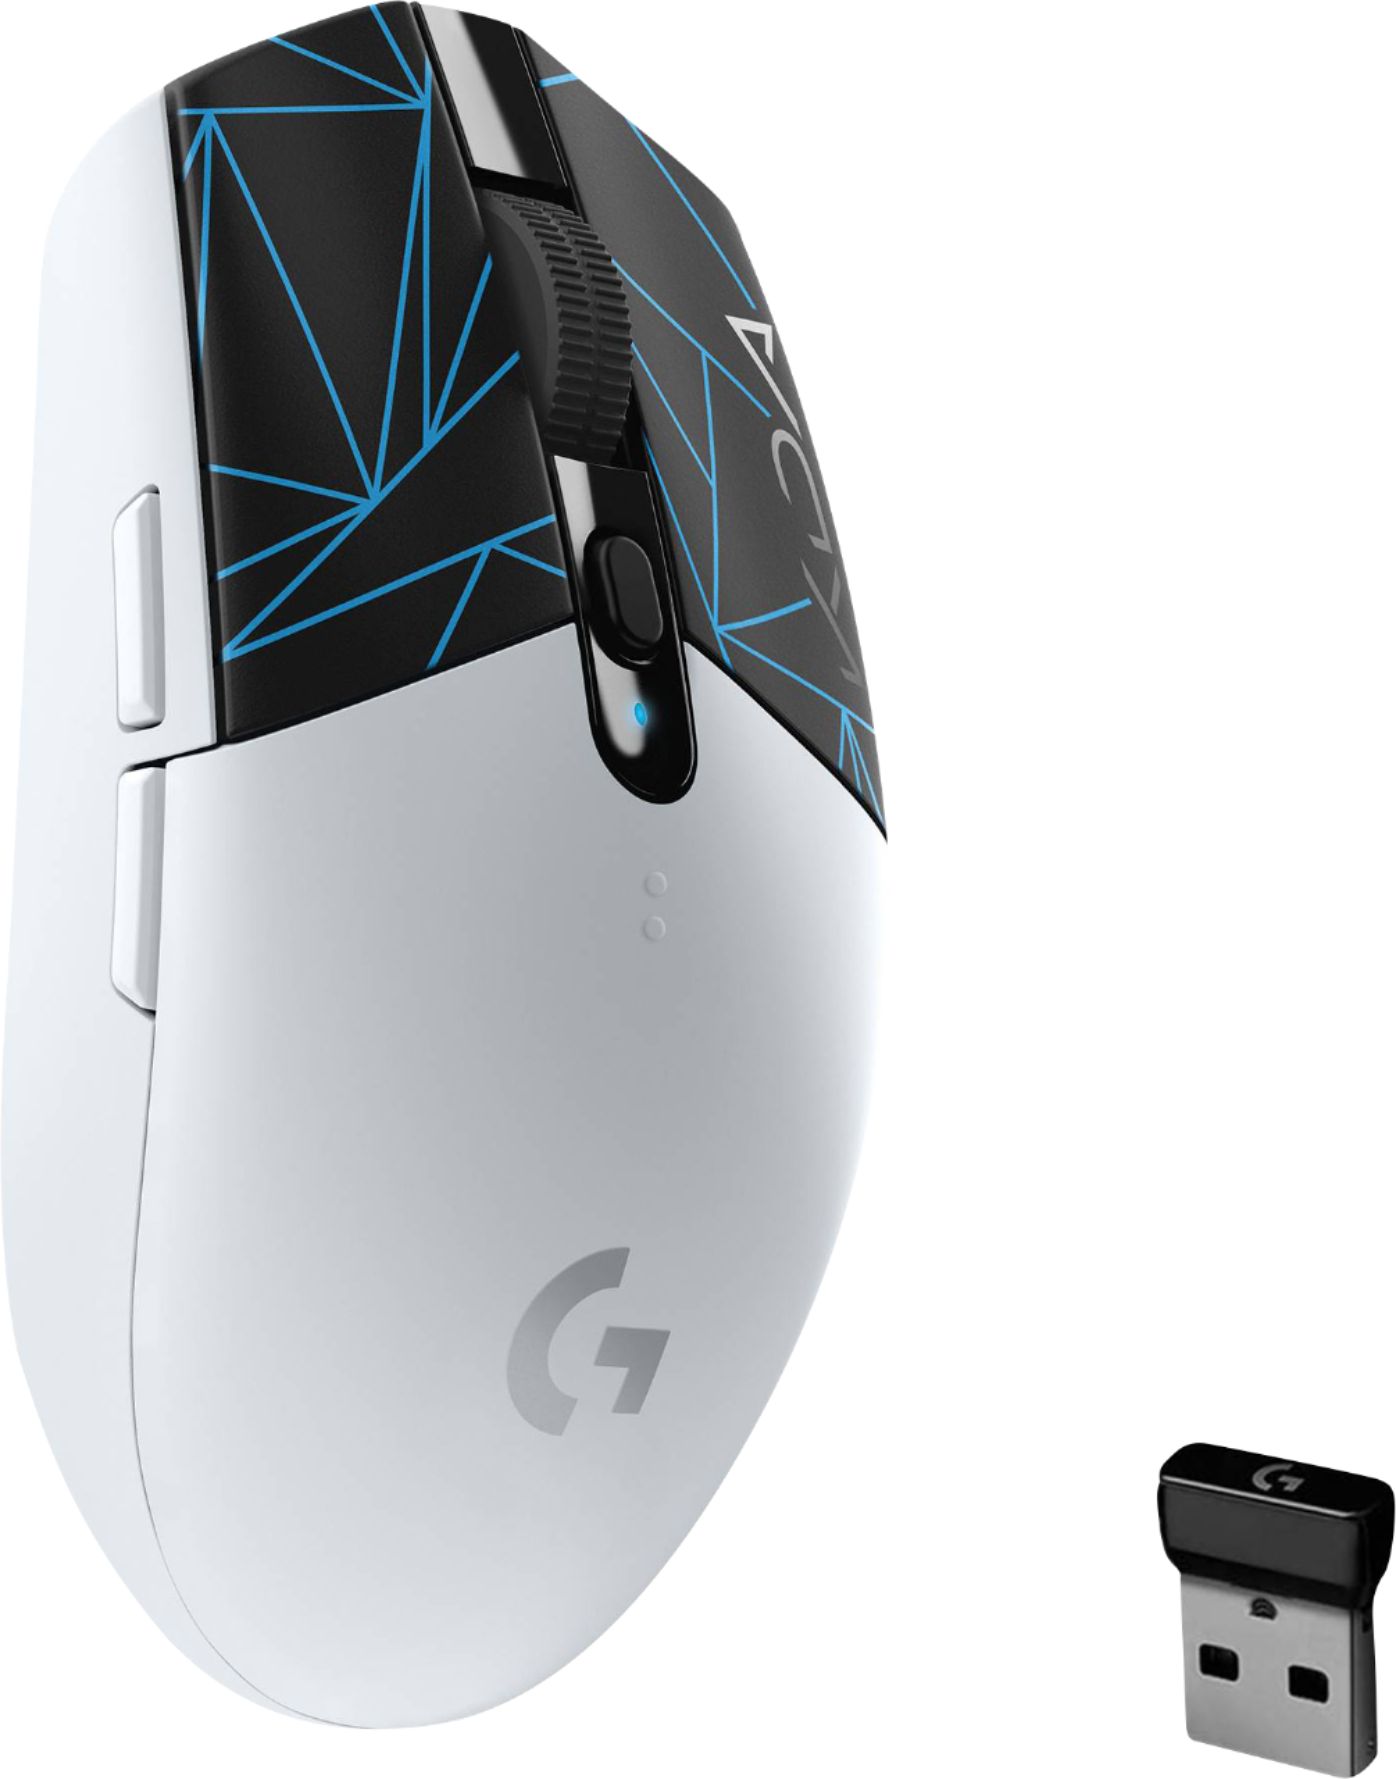 Logitech G305 Lightspeed Wireless Mouse Review - Kr4m